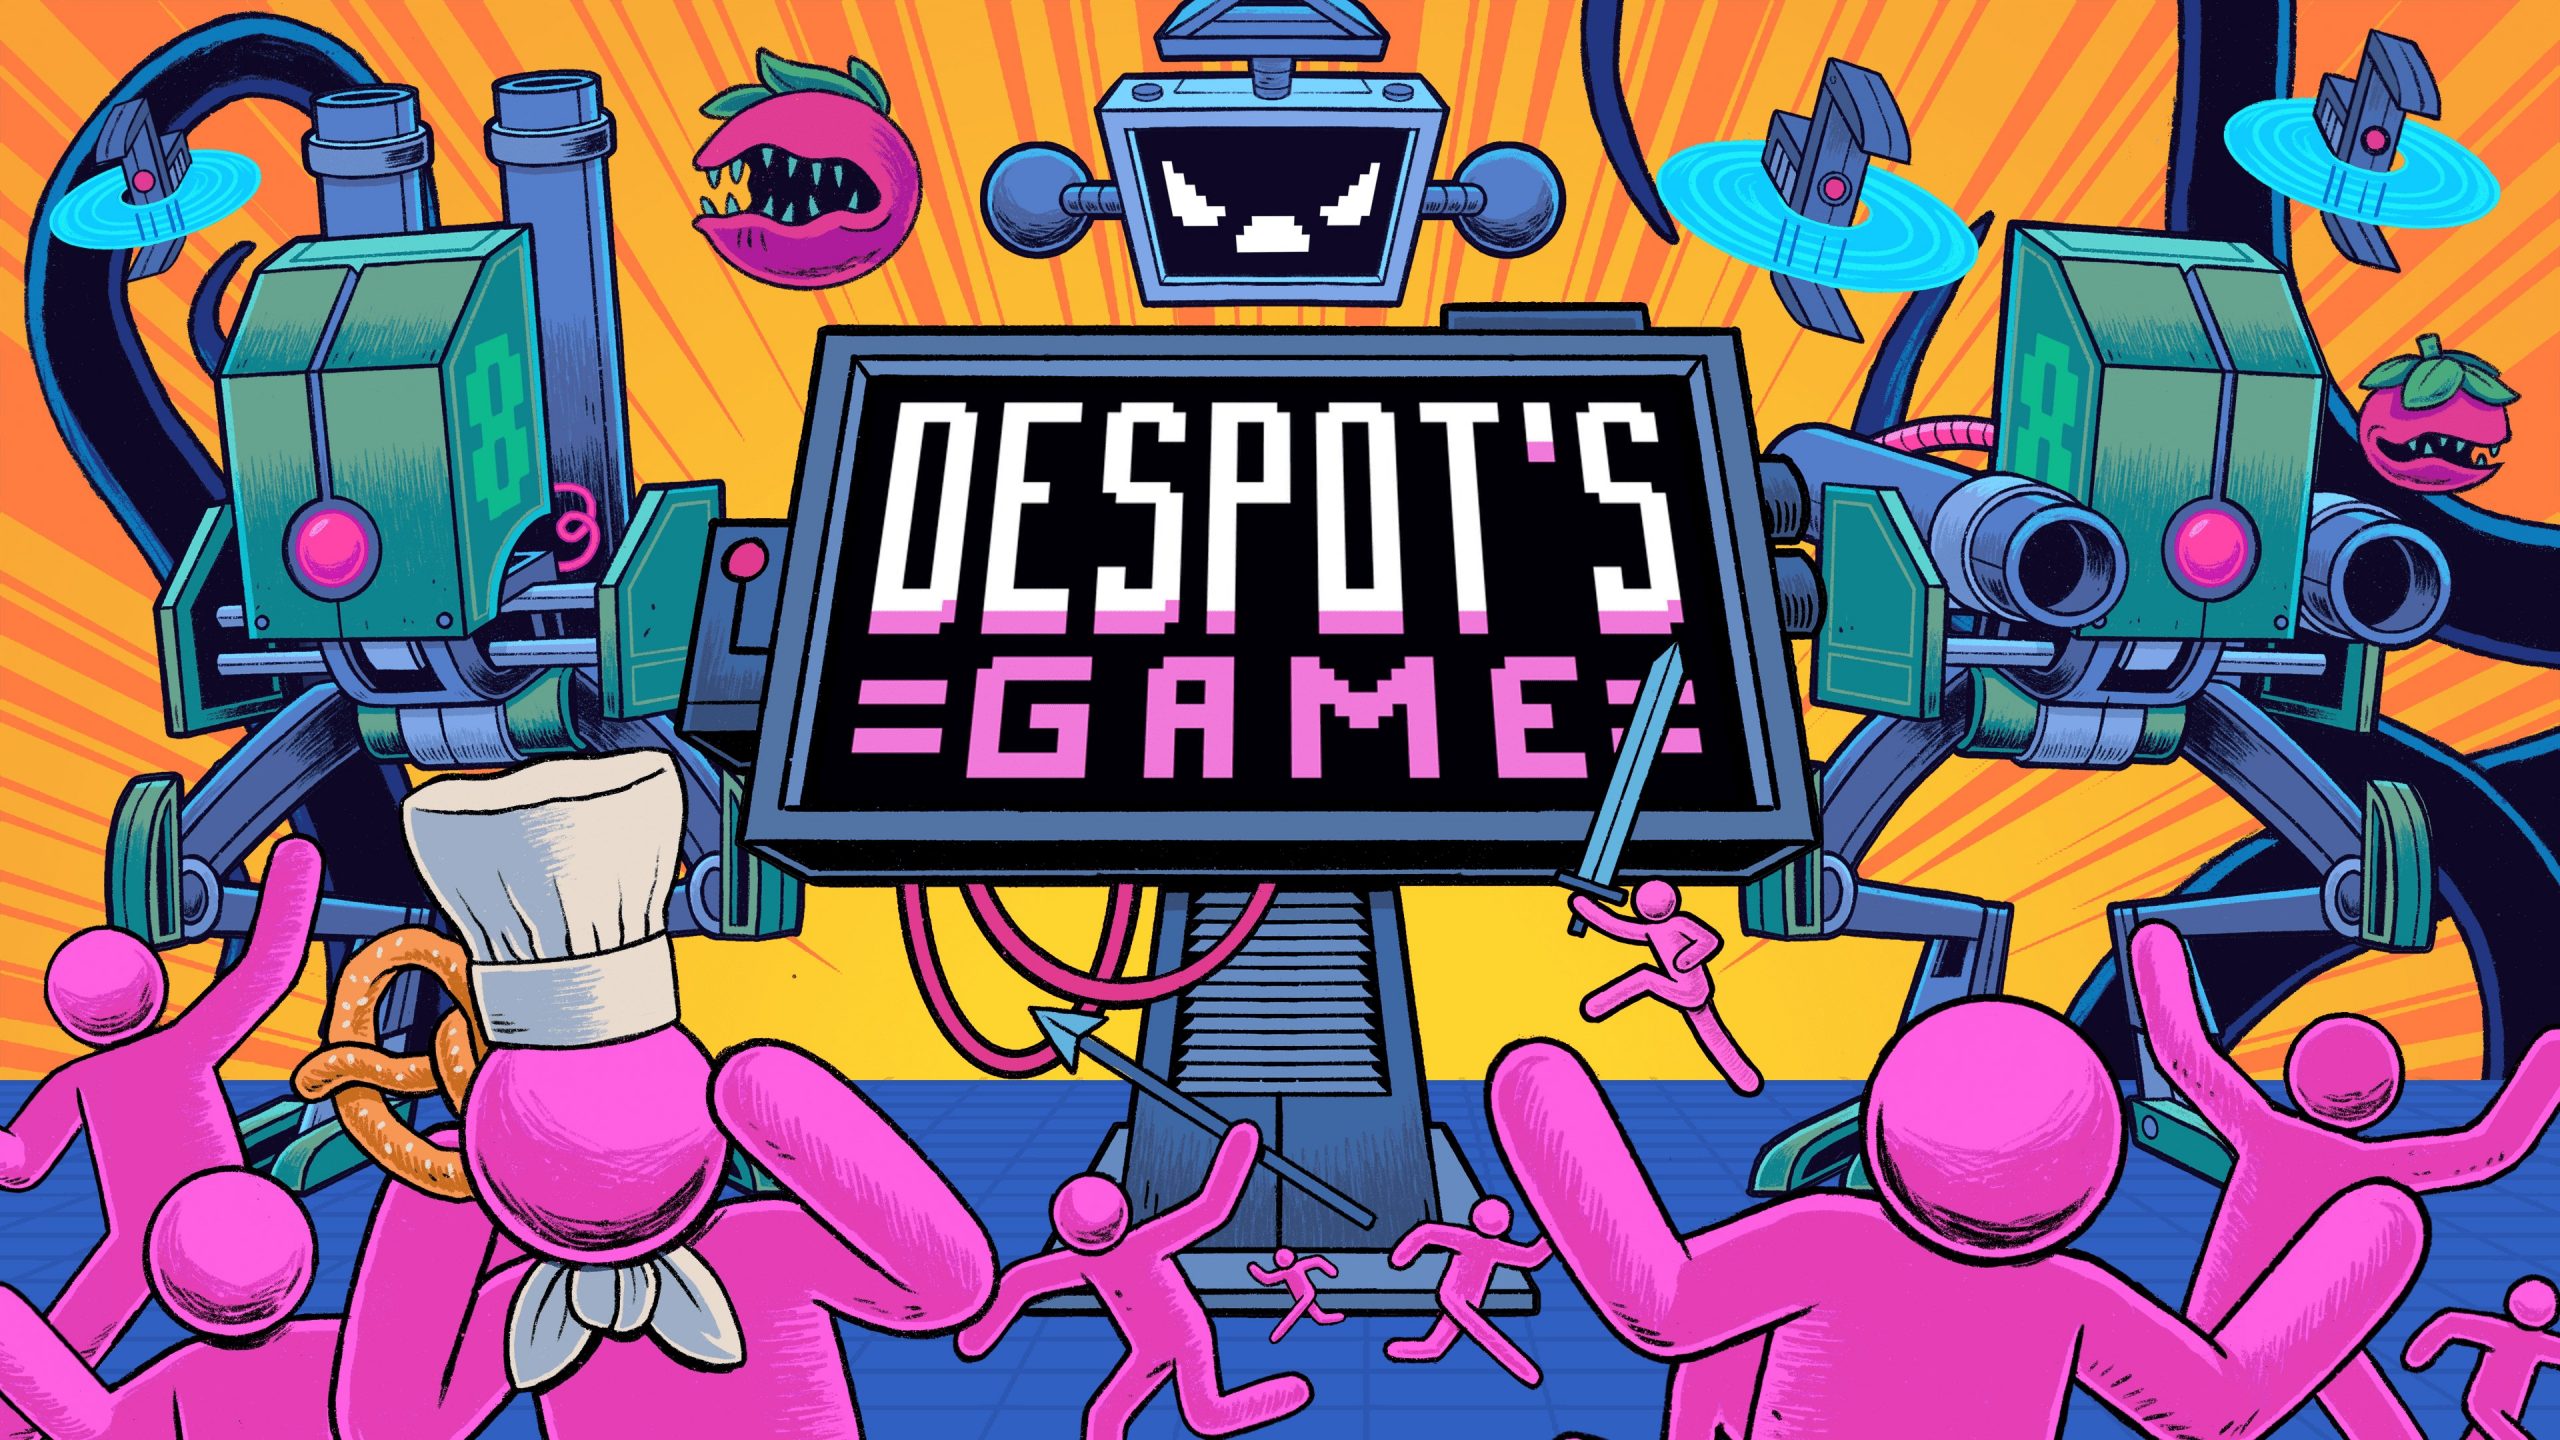 Let’s play a Despot’s Game!